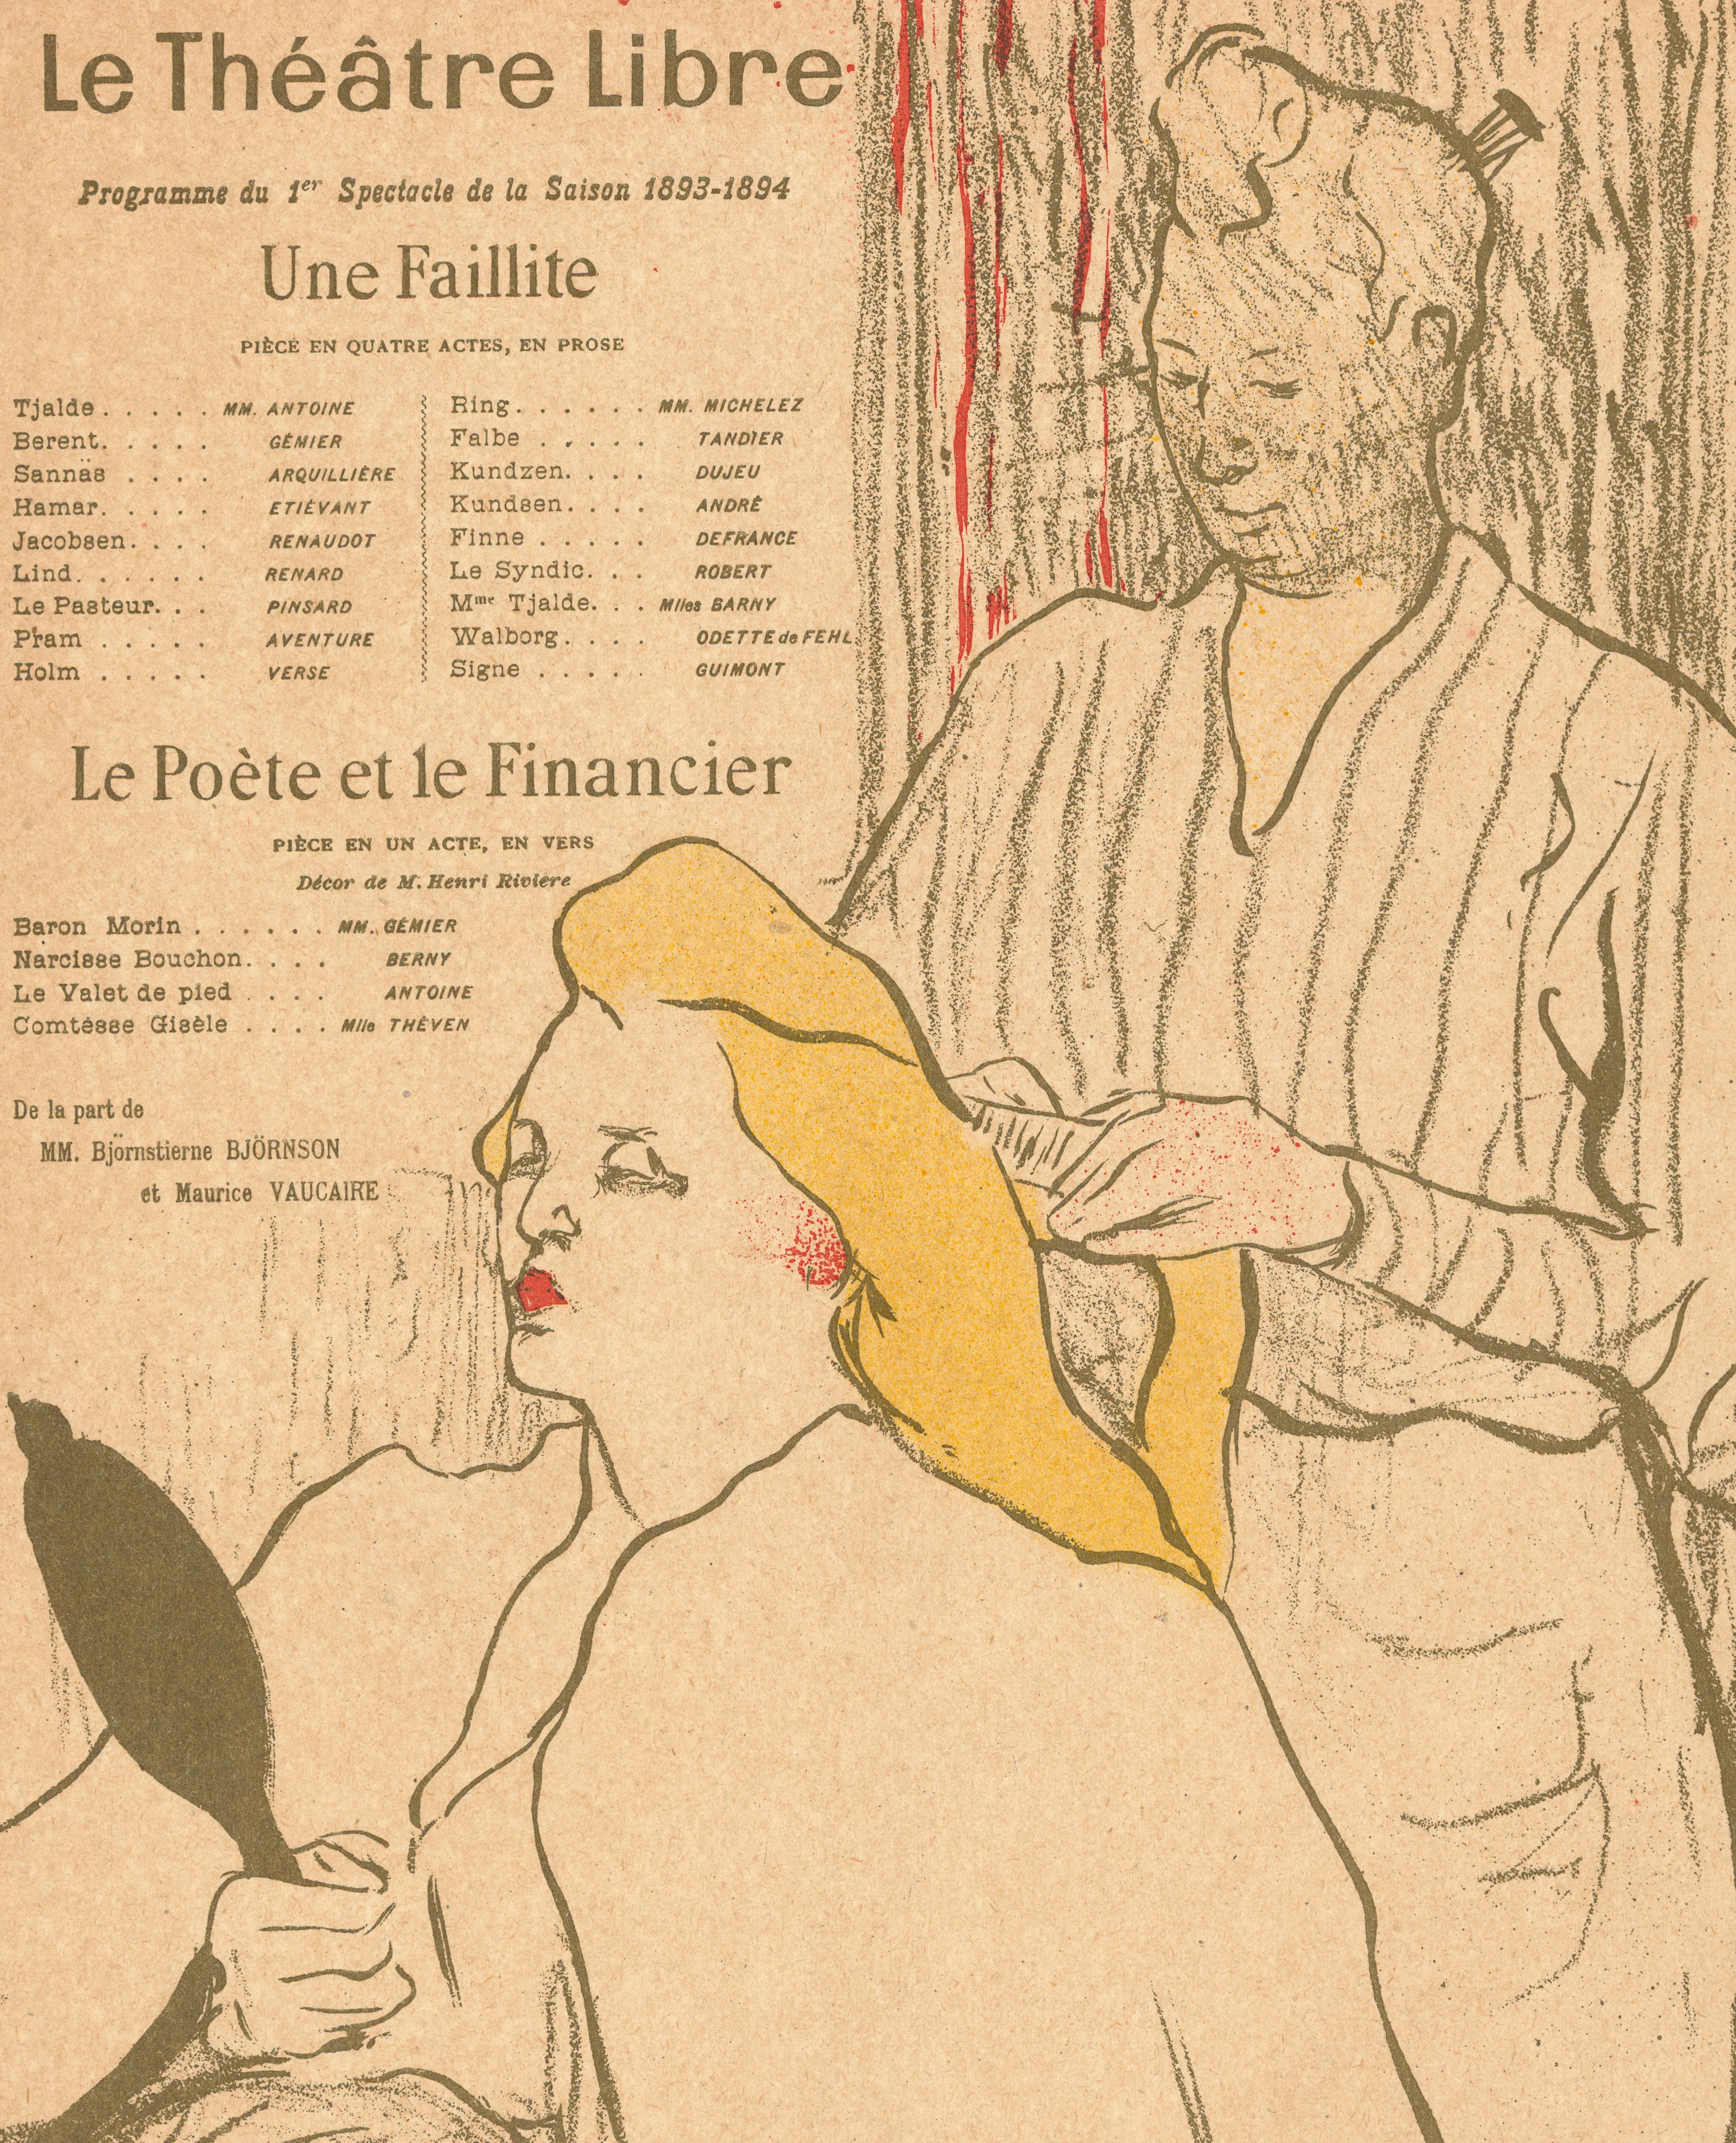 Original Vintage Poster-Lautrec-La Coiffure-Programme-Théâtre Libre, 1893
This original theatre program for:
Une Faillite - A Bankruptcy
Le Poète et le Financier - The Poet and the Financier
at the Théâtre Libre by Henri de Toulouse-Lautrec is known